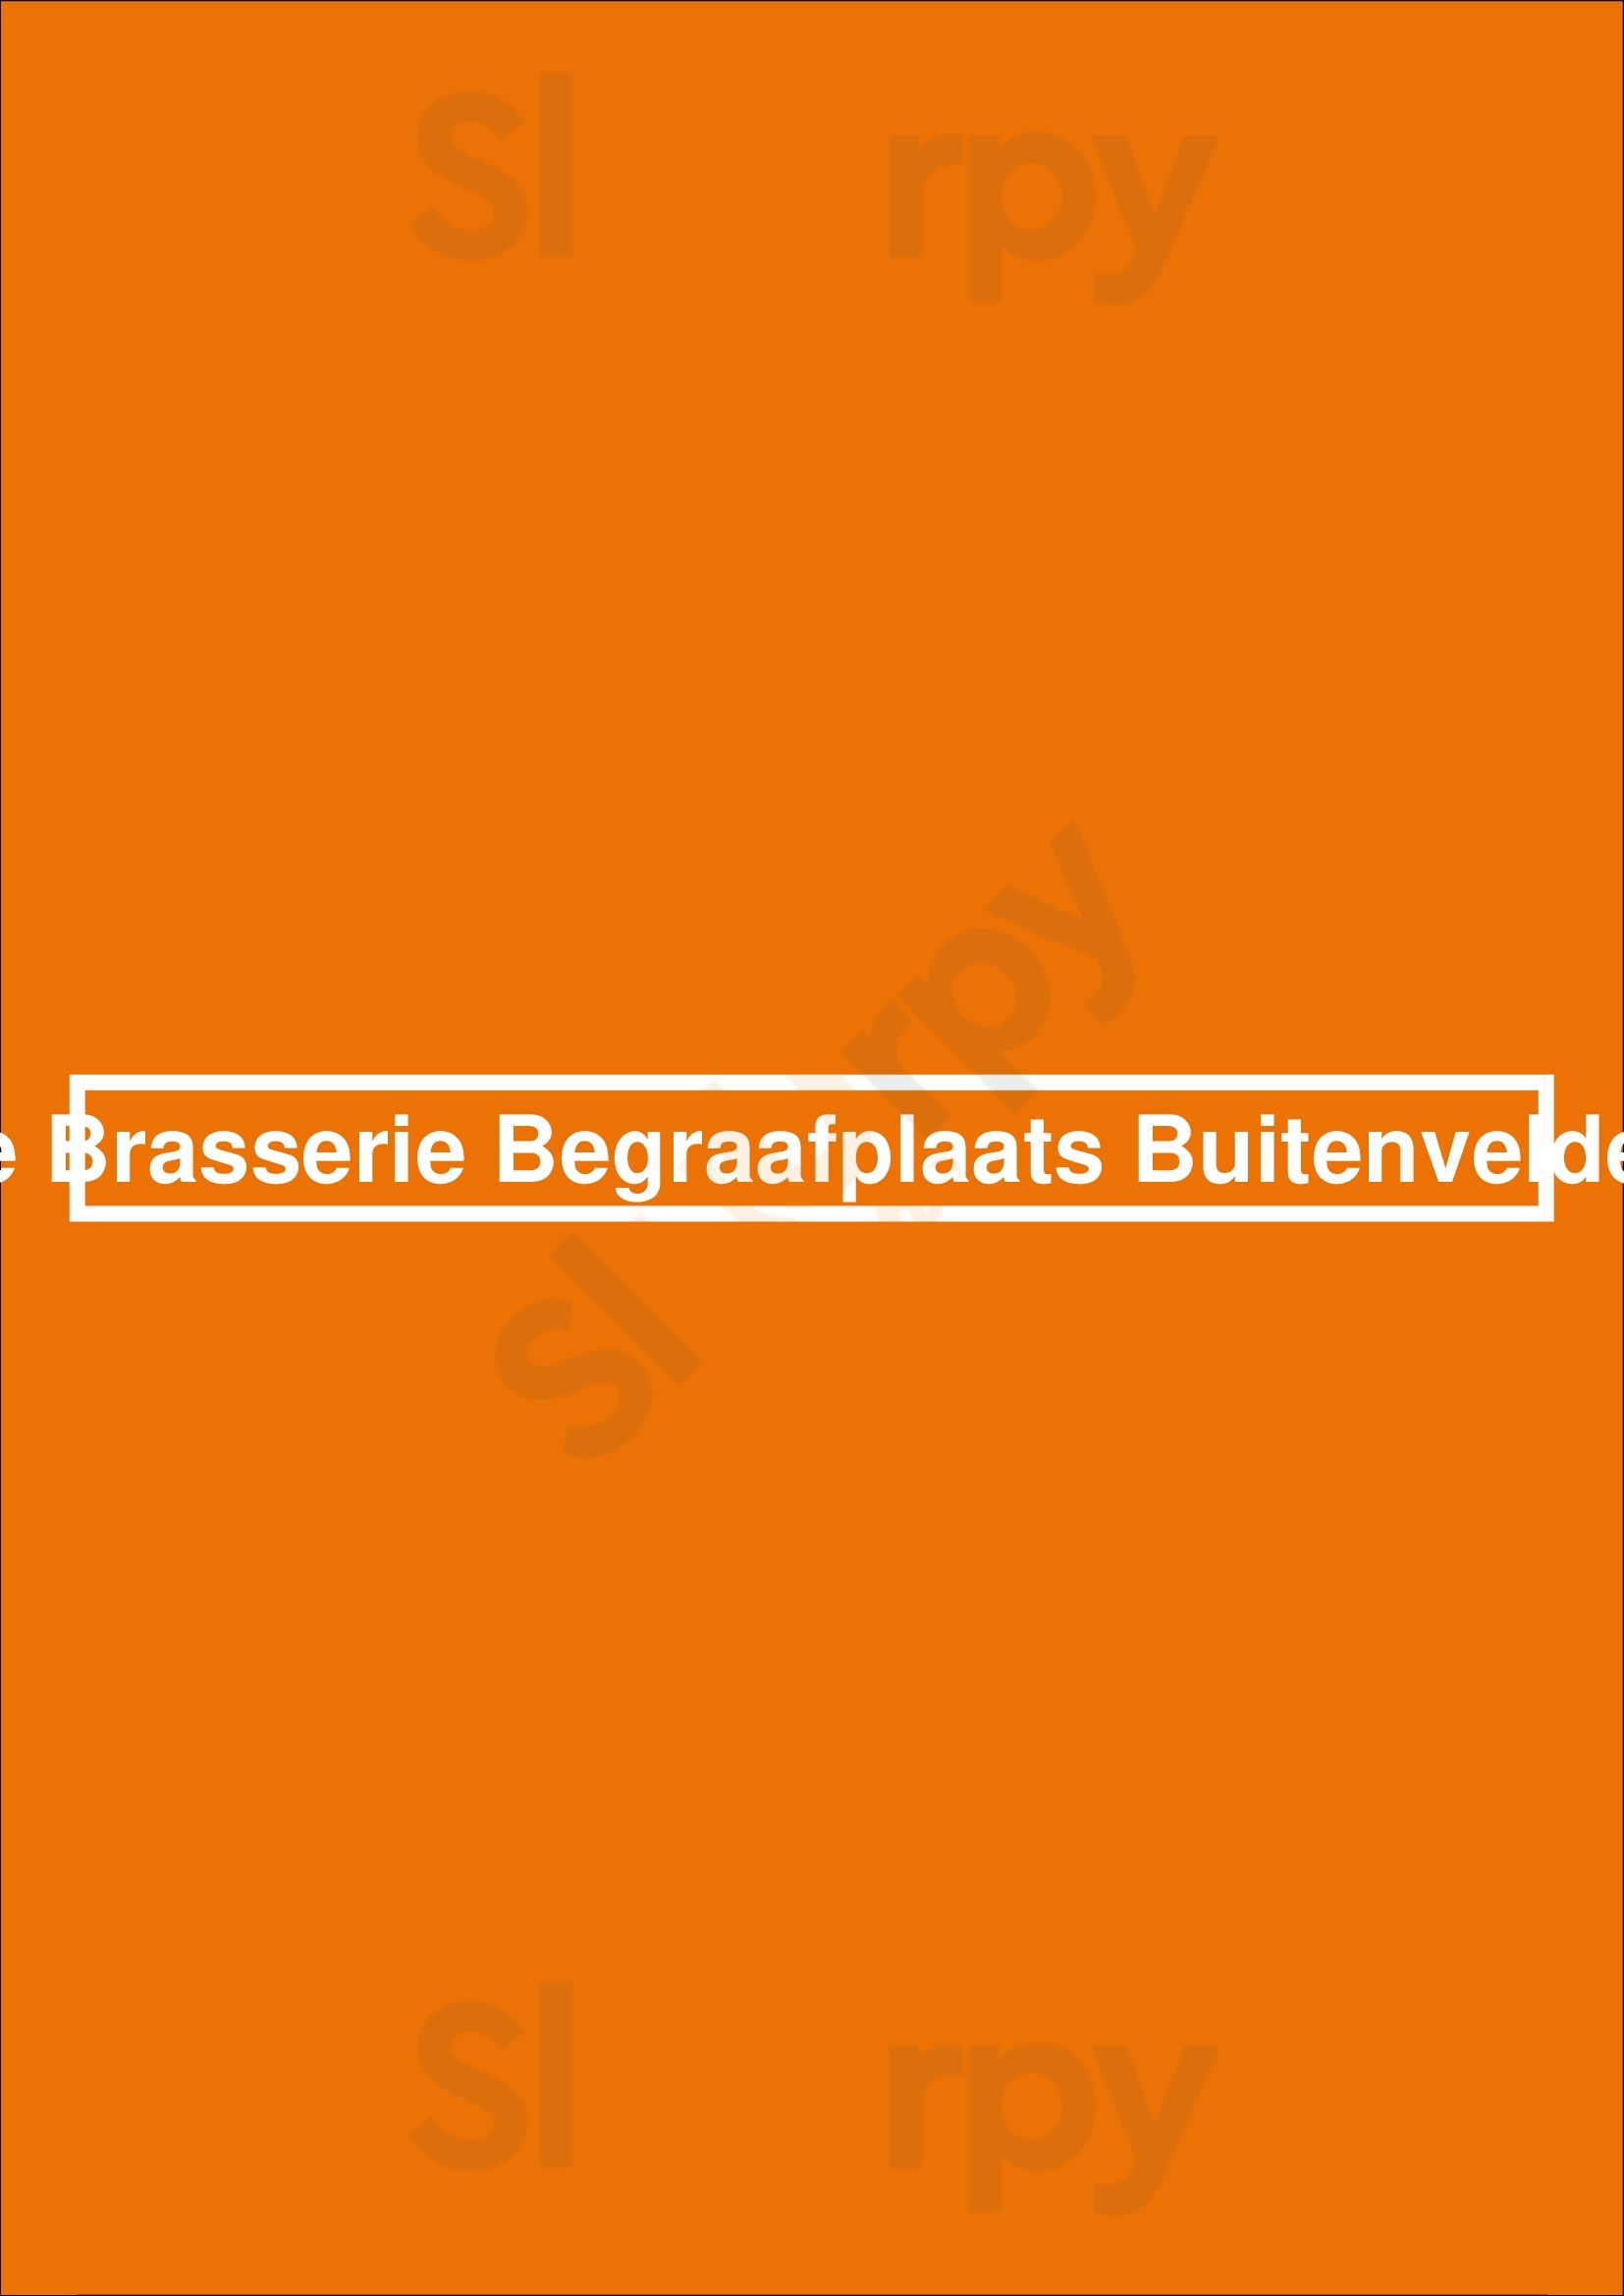 De Brasserie Begraafplaats Buitenveldert Amsterdam Menu - 1